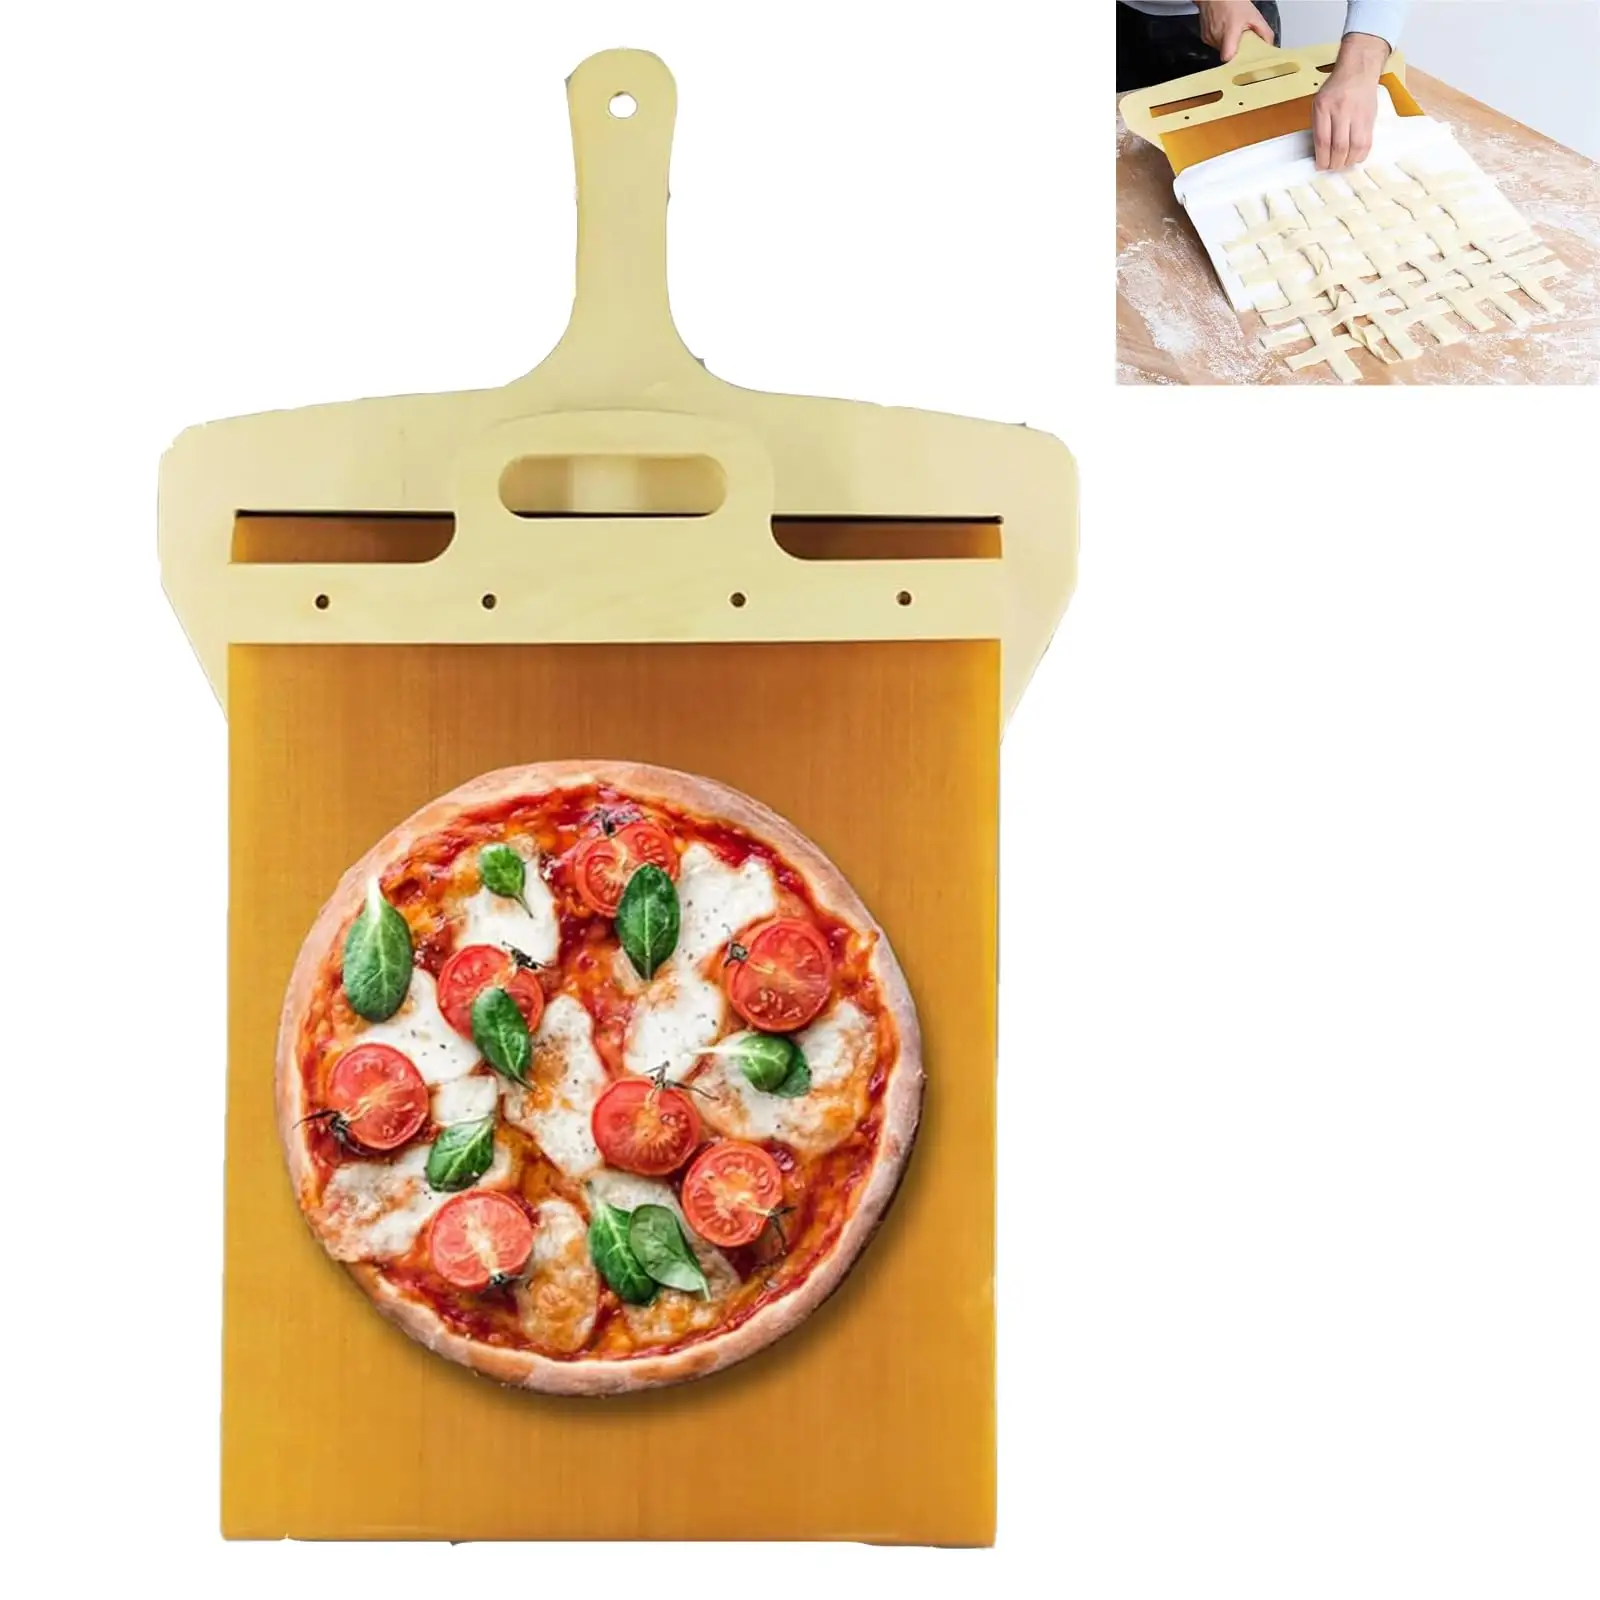 पिज्जा पील स्लाइड, पिज्जा का शीप जो पूरी तरह से बांस पिज्जा स्थानांतरित करता है पिज़्ज़ा स्पैटुला फिसलने वाला पिज़्ज़ा शॉवेल, पिज़्ज़ा पेपिज़्ज़ा, पिज़्ज़ा पेज़ेल पिज्जा